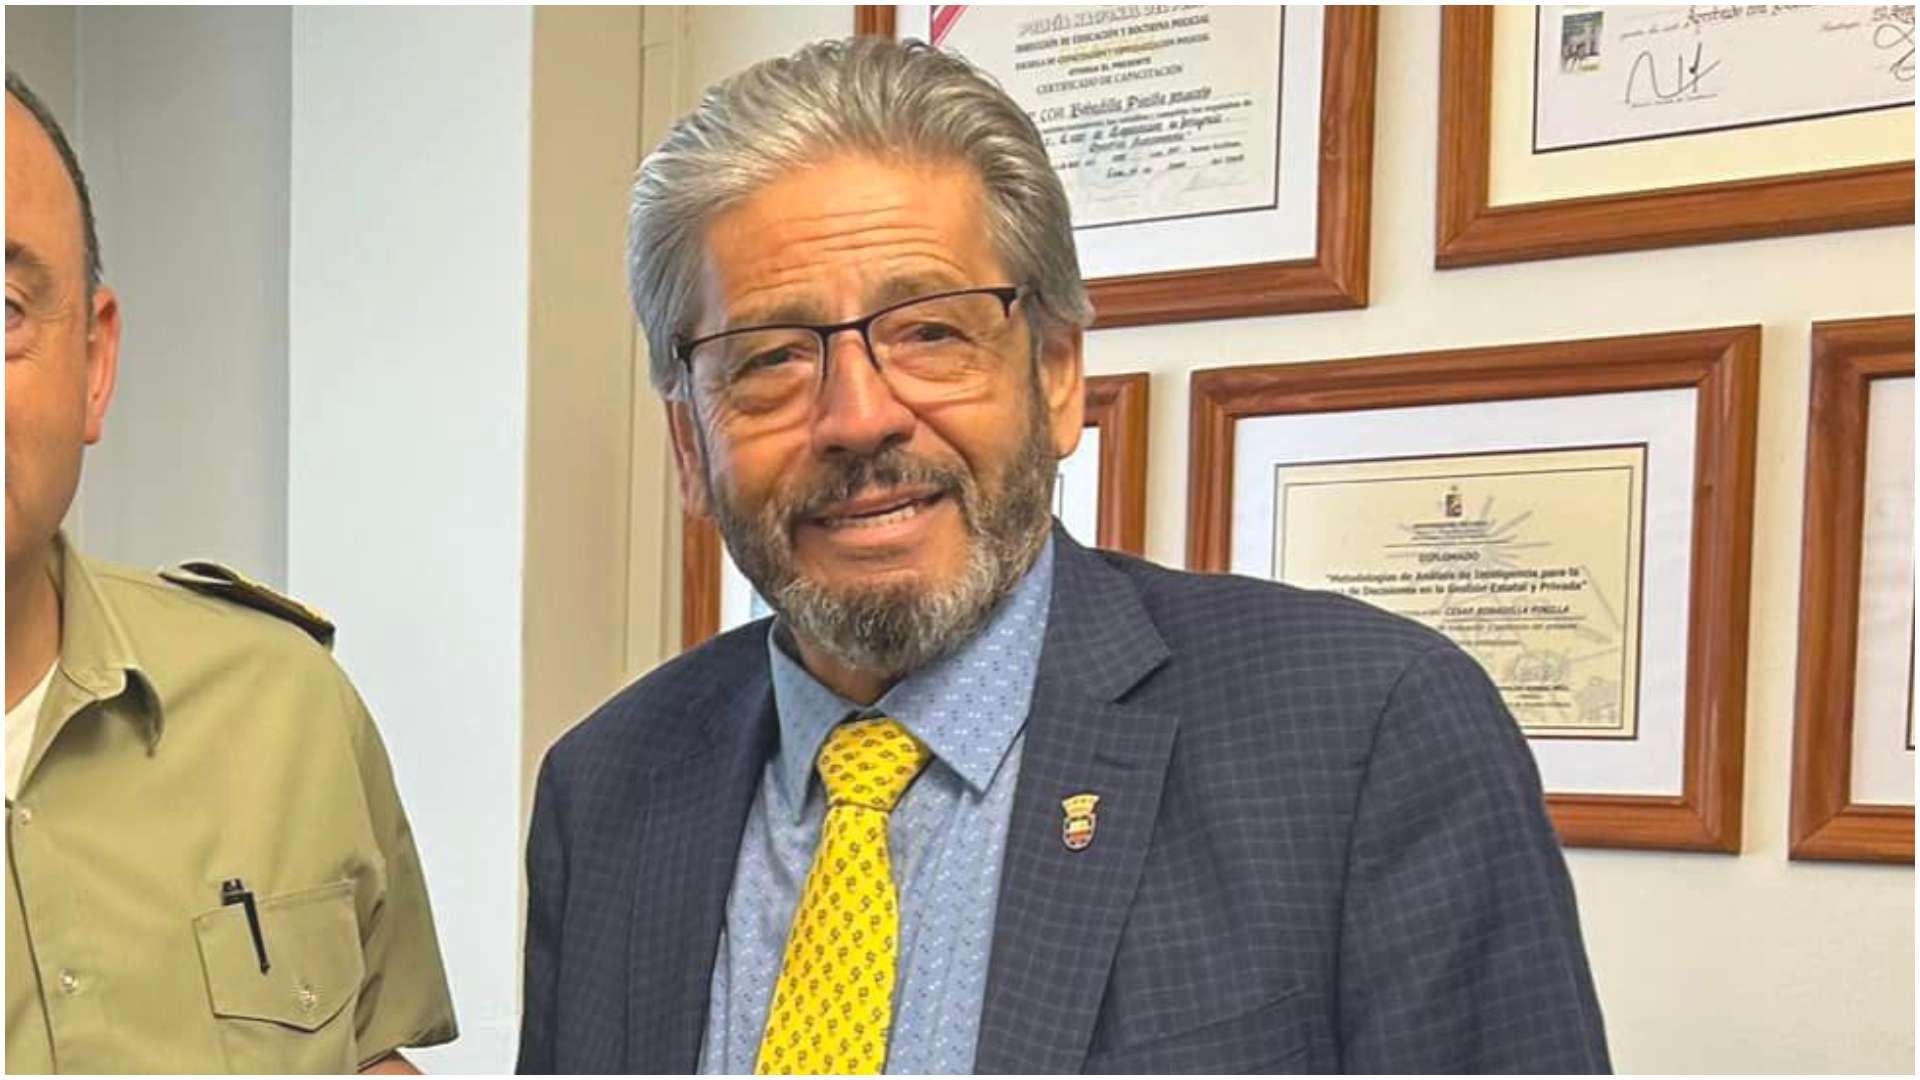 jorge roa, alcalde de comuna de florida, es encontrado muerto tras suicidarse en su domicilio